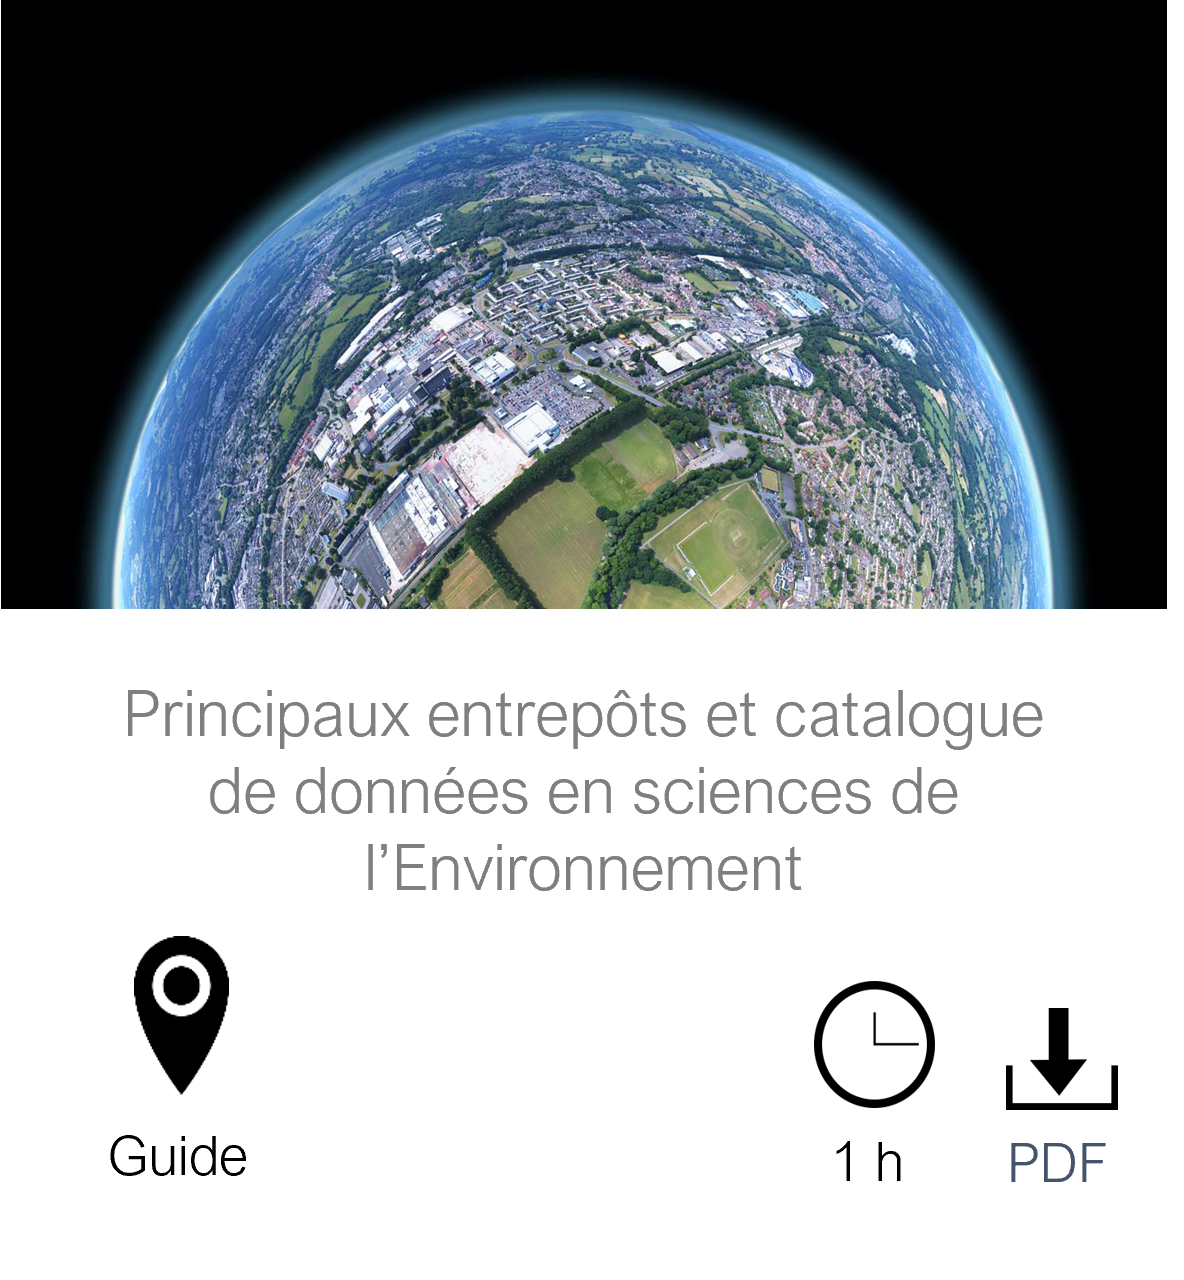 Vignette vers la page Principaux entrepôts et catalogue de données en sciences de l'Environnement, guide, durée de lecture 1 heure